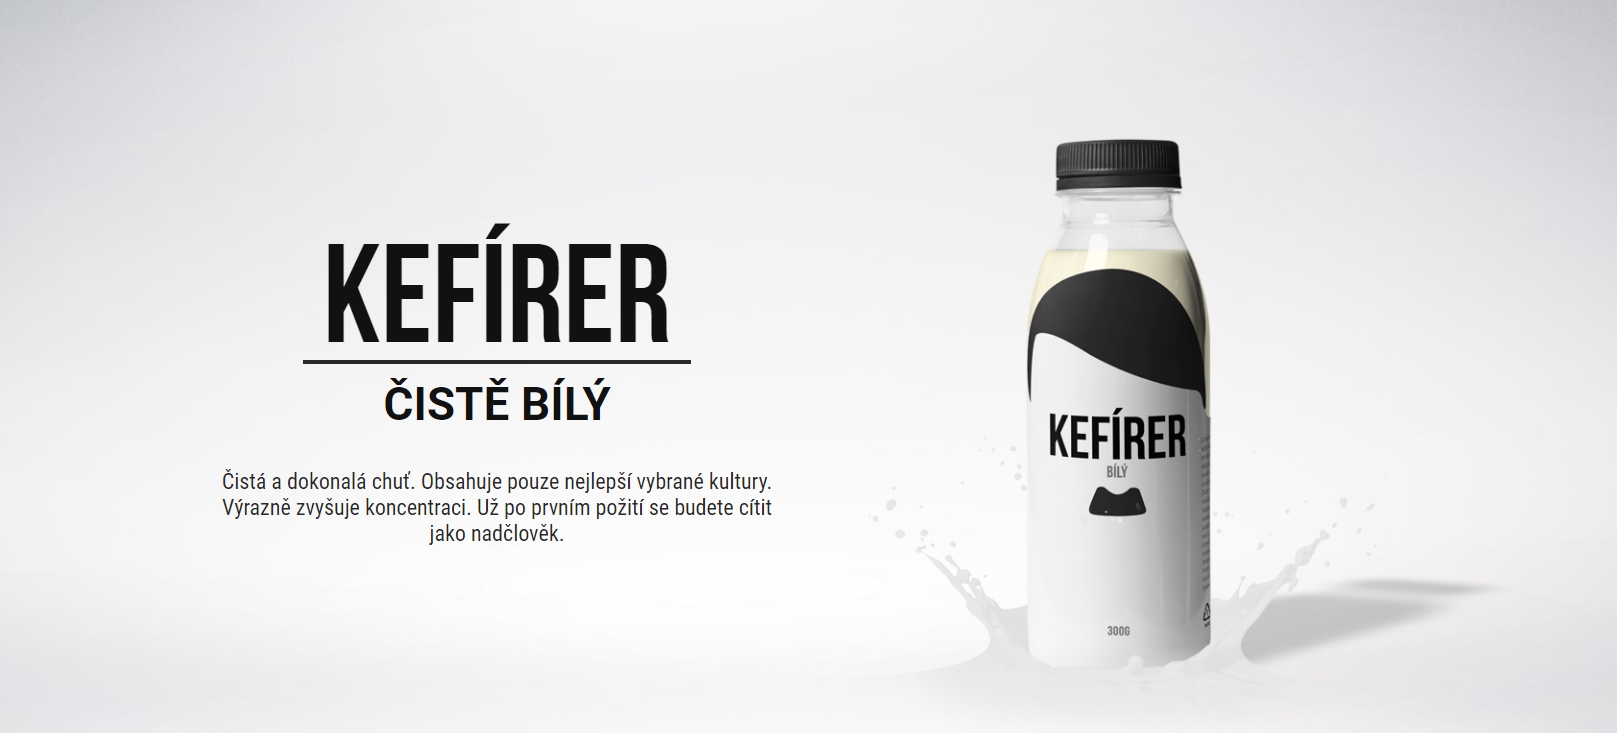 Kefírer: Mléčný produkt nebo skvělá teaserová kampaň?